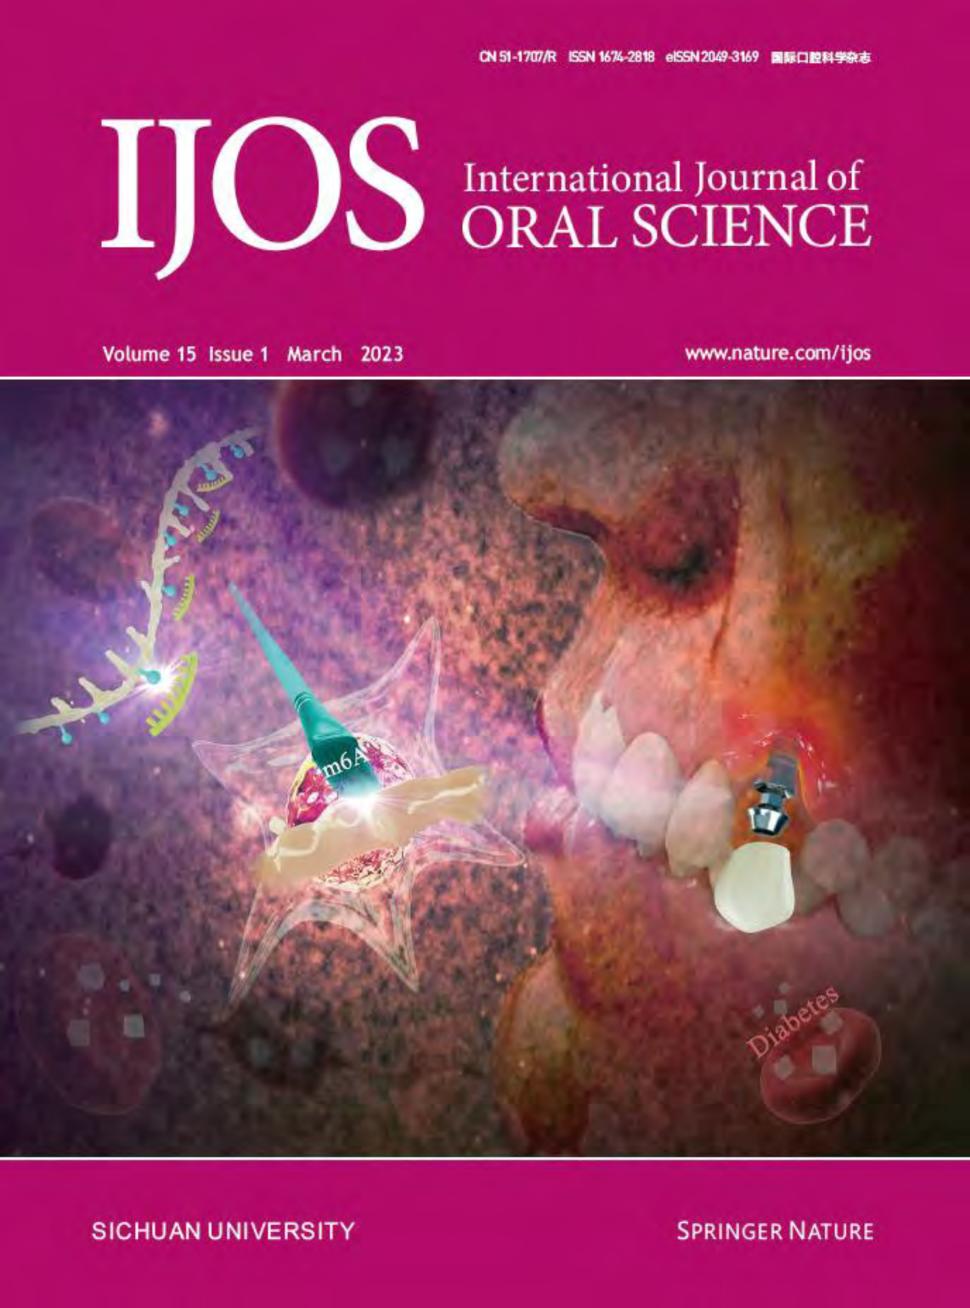 International Journal of Oral Science杂志